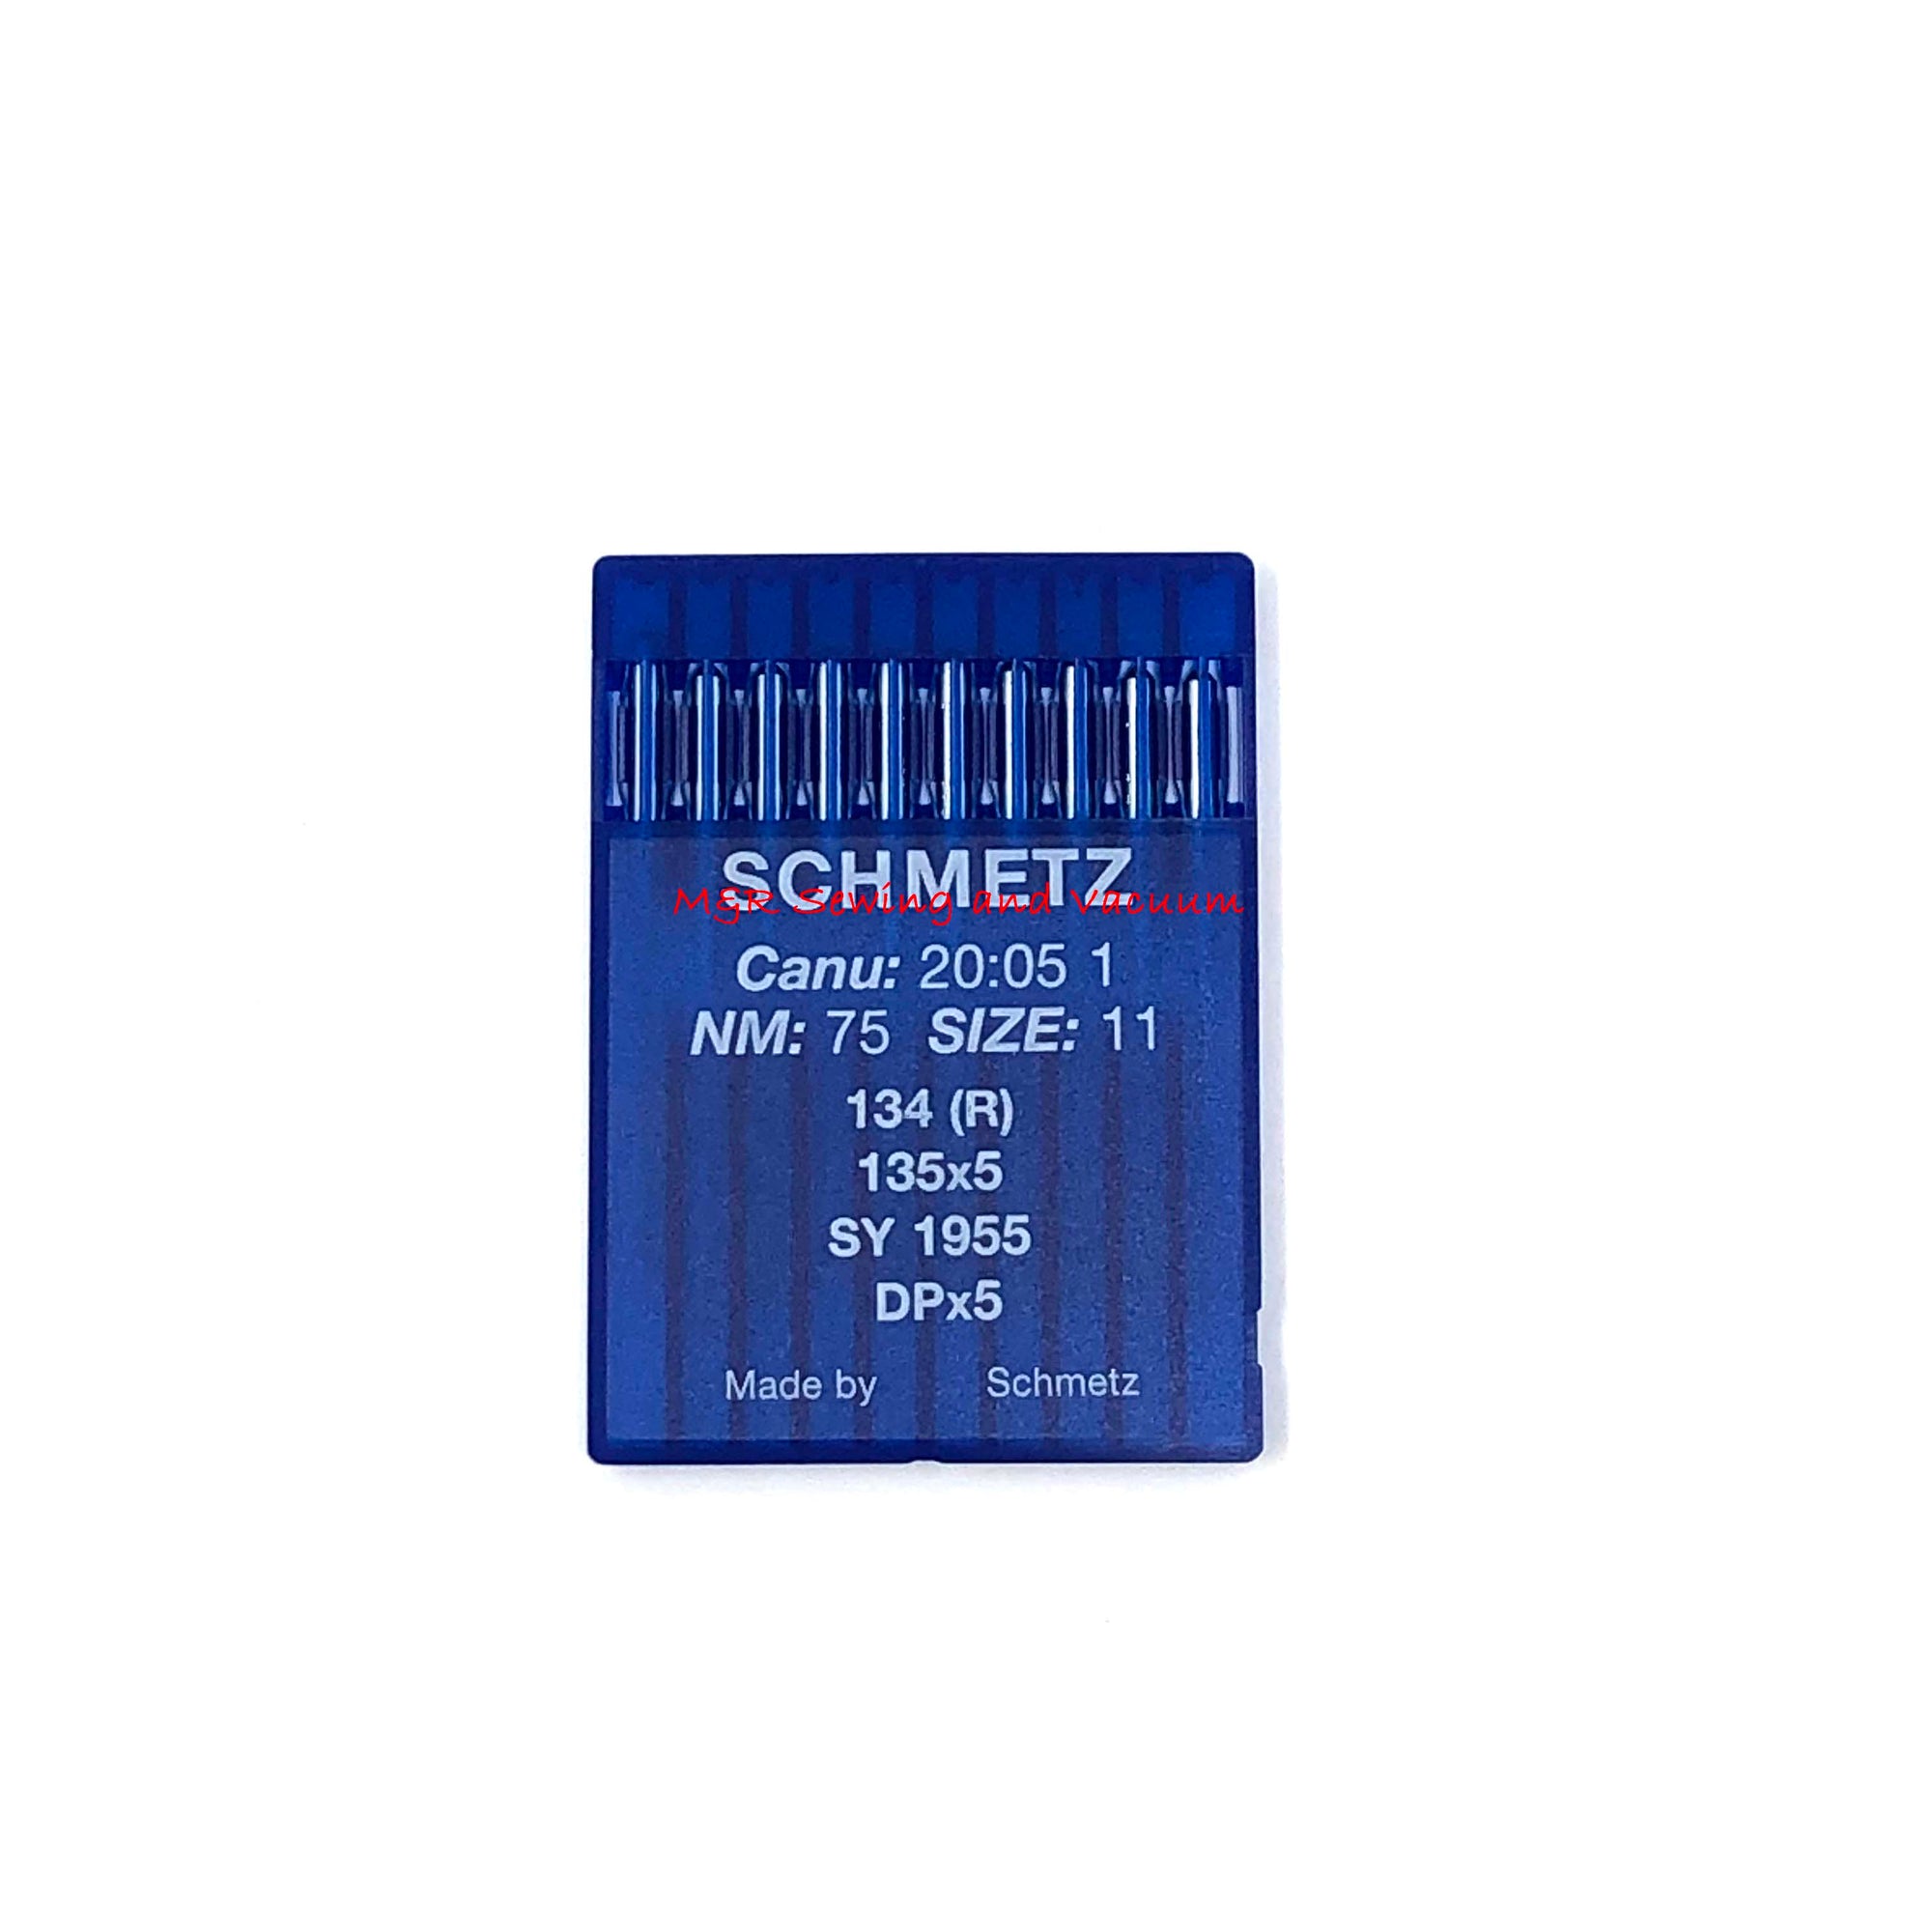 Schmetz 134R (DPx5) Industrial Needles - 75/11